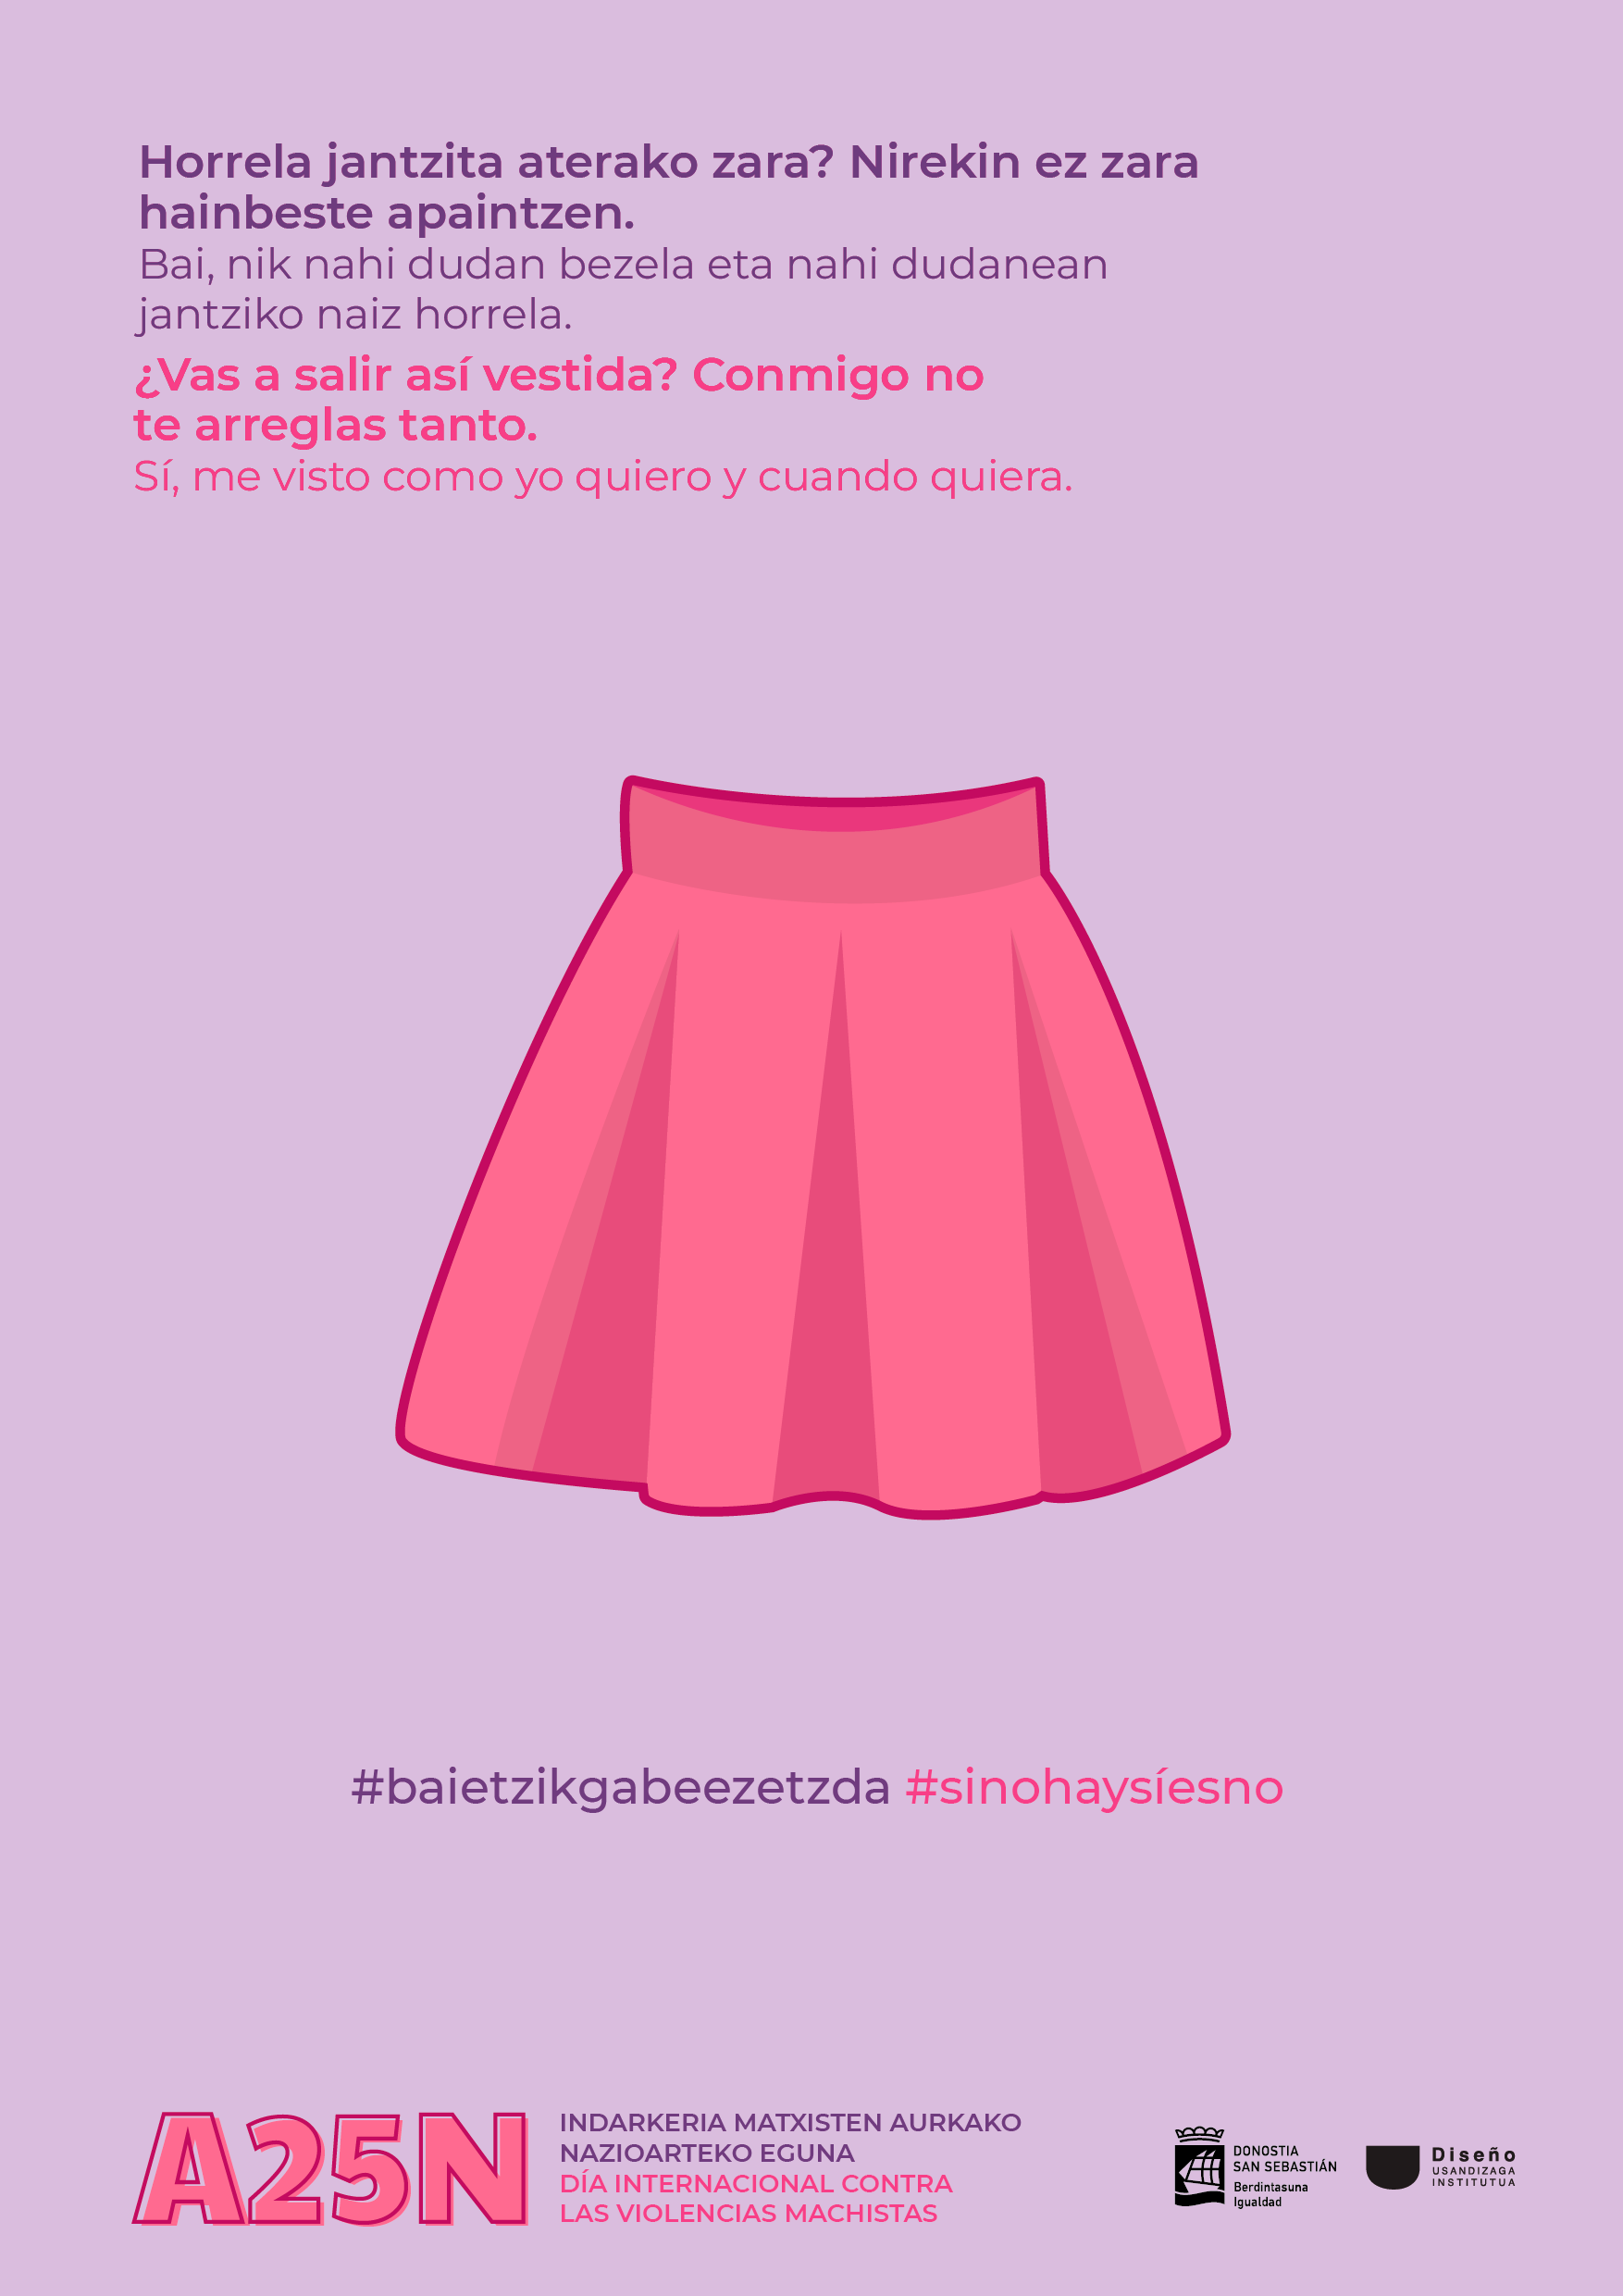 Cartel con ilustración de falda que pertenece a la campaña del 25N